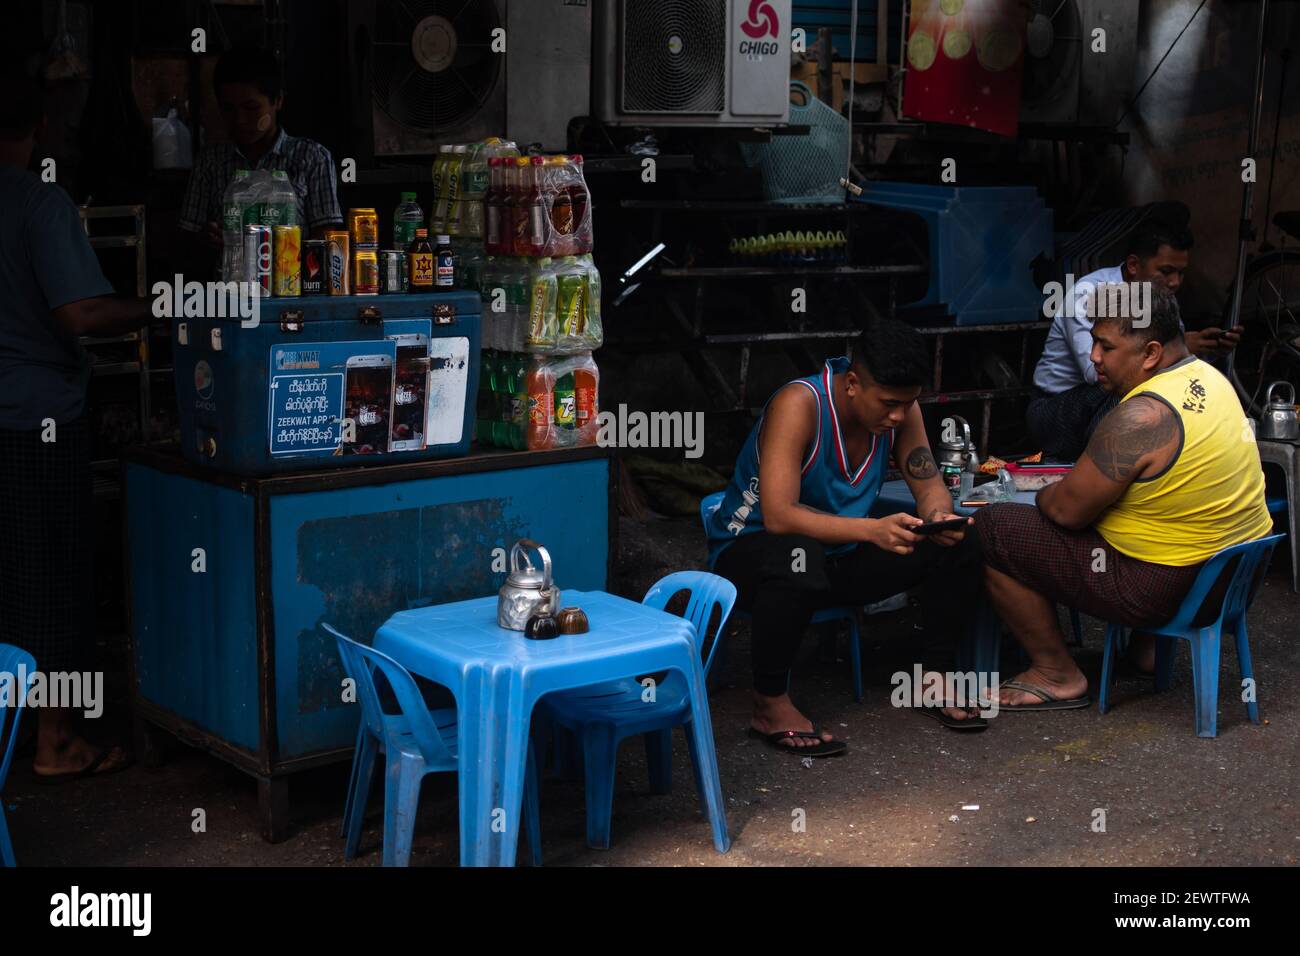 YANGON, MYANMAR - 1 GENNAIO 2020: Alcuni birmani siedono su sedie di plastica e godono di un po' di riposo in una bancarella di cibo e bevande nel centro della città Foto Stock